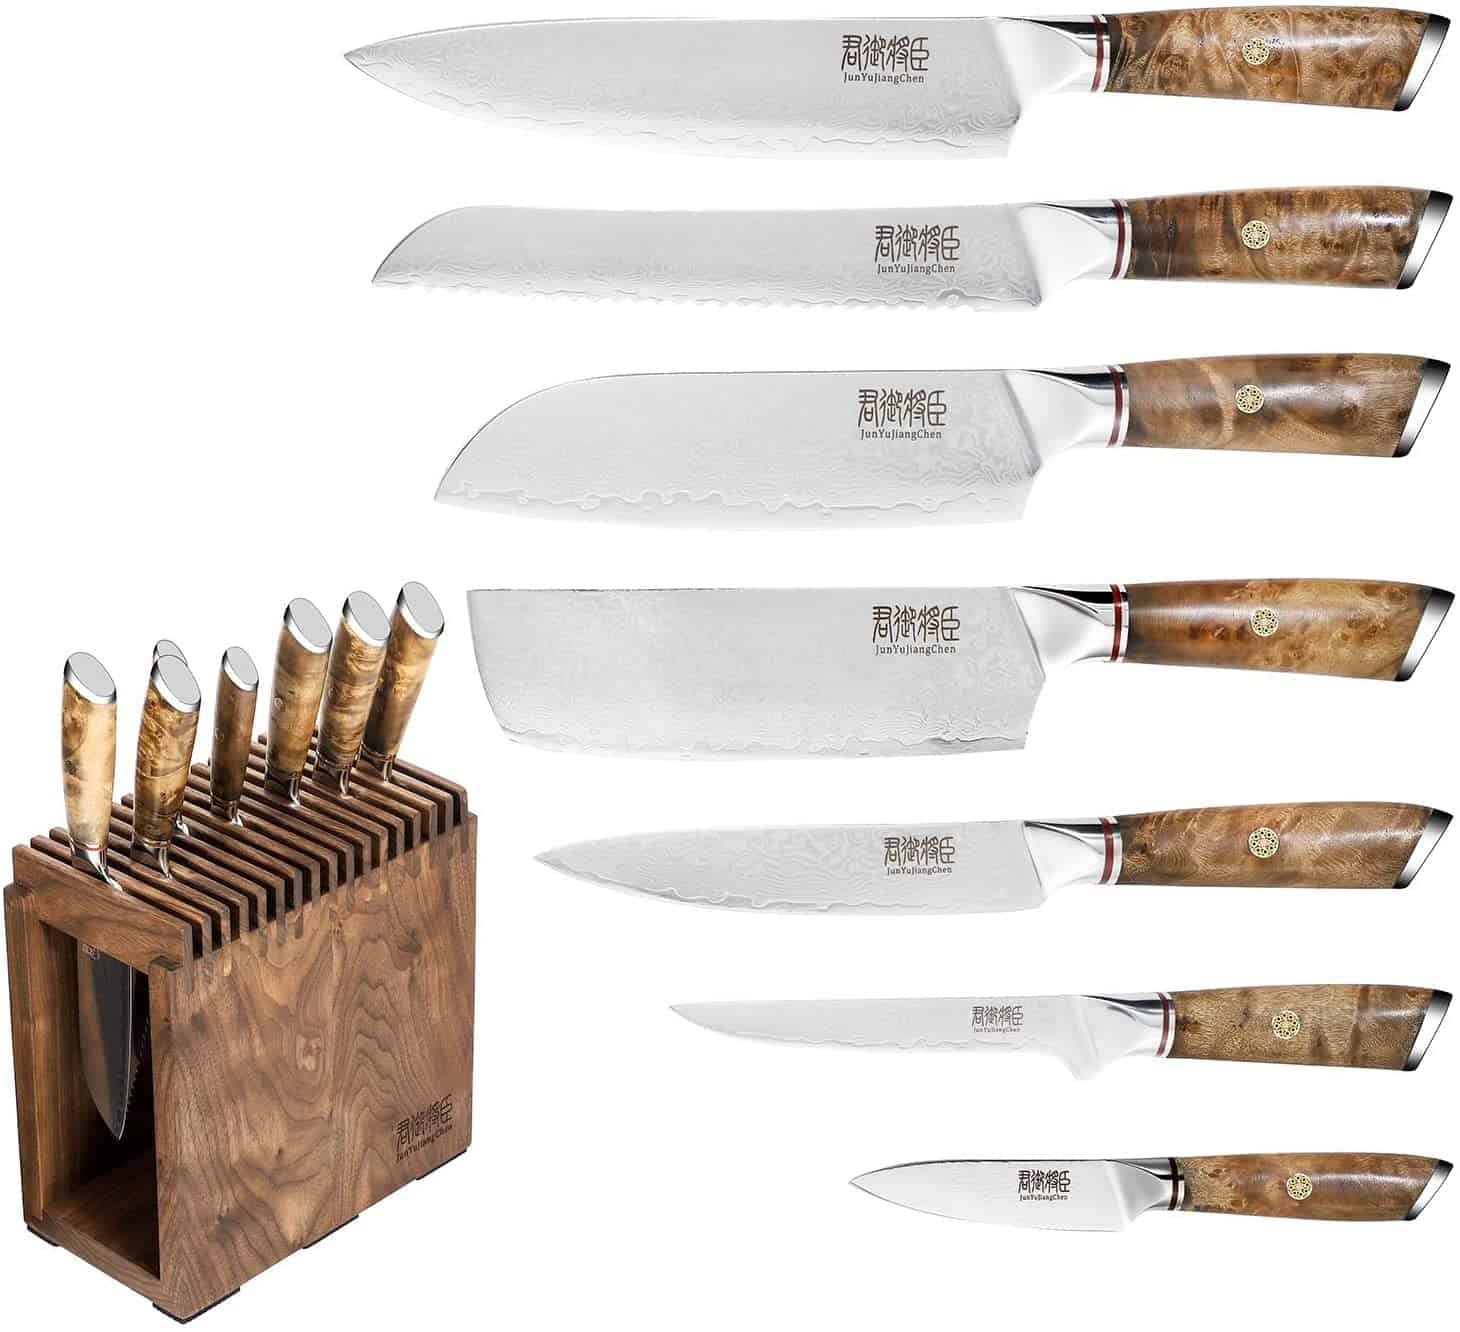 El mejor juego de cuchillos de acero VG-10- Juego de cuchillos de chef de 8 piezas JUNYUJIANGCHEN todos los cuchillos